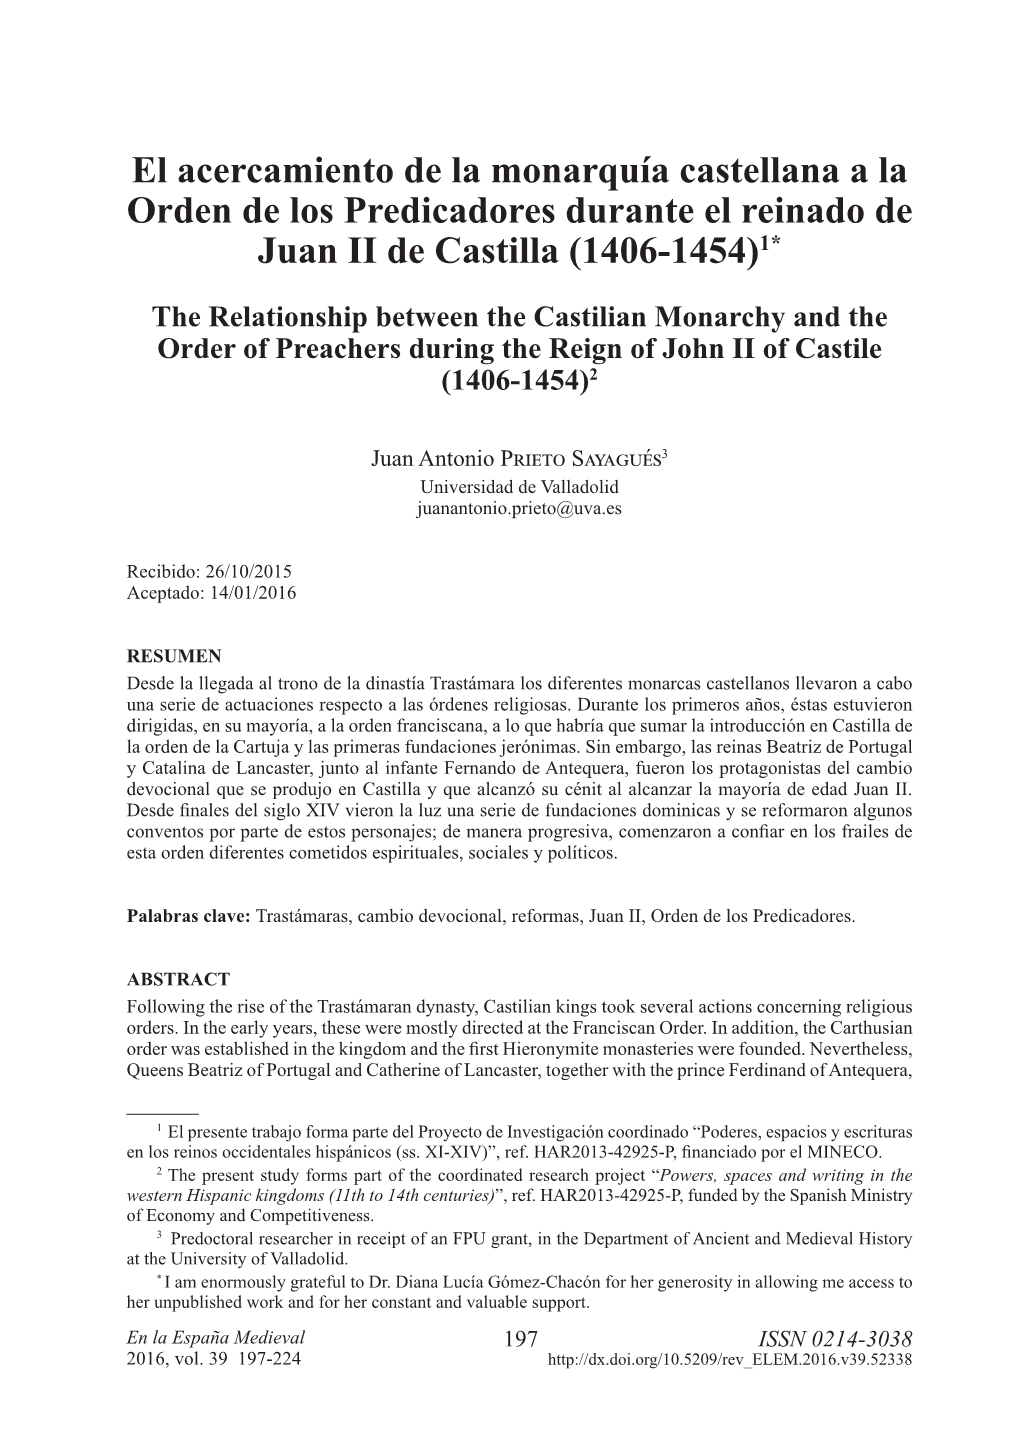 El Acercamiento De La Monarquía Castellana a La Orden De Los Predicadores Durante El Reinado De Juan II De Castilla (1406-1454)1*